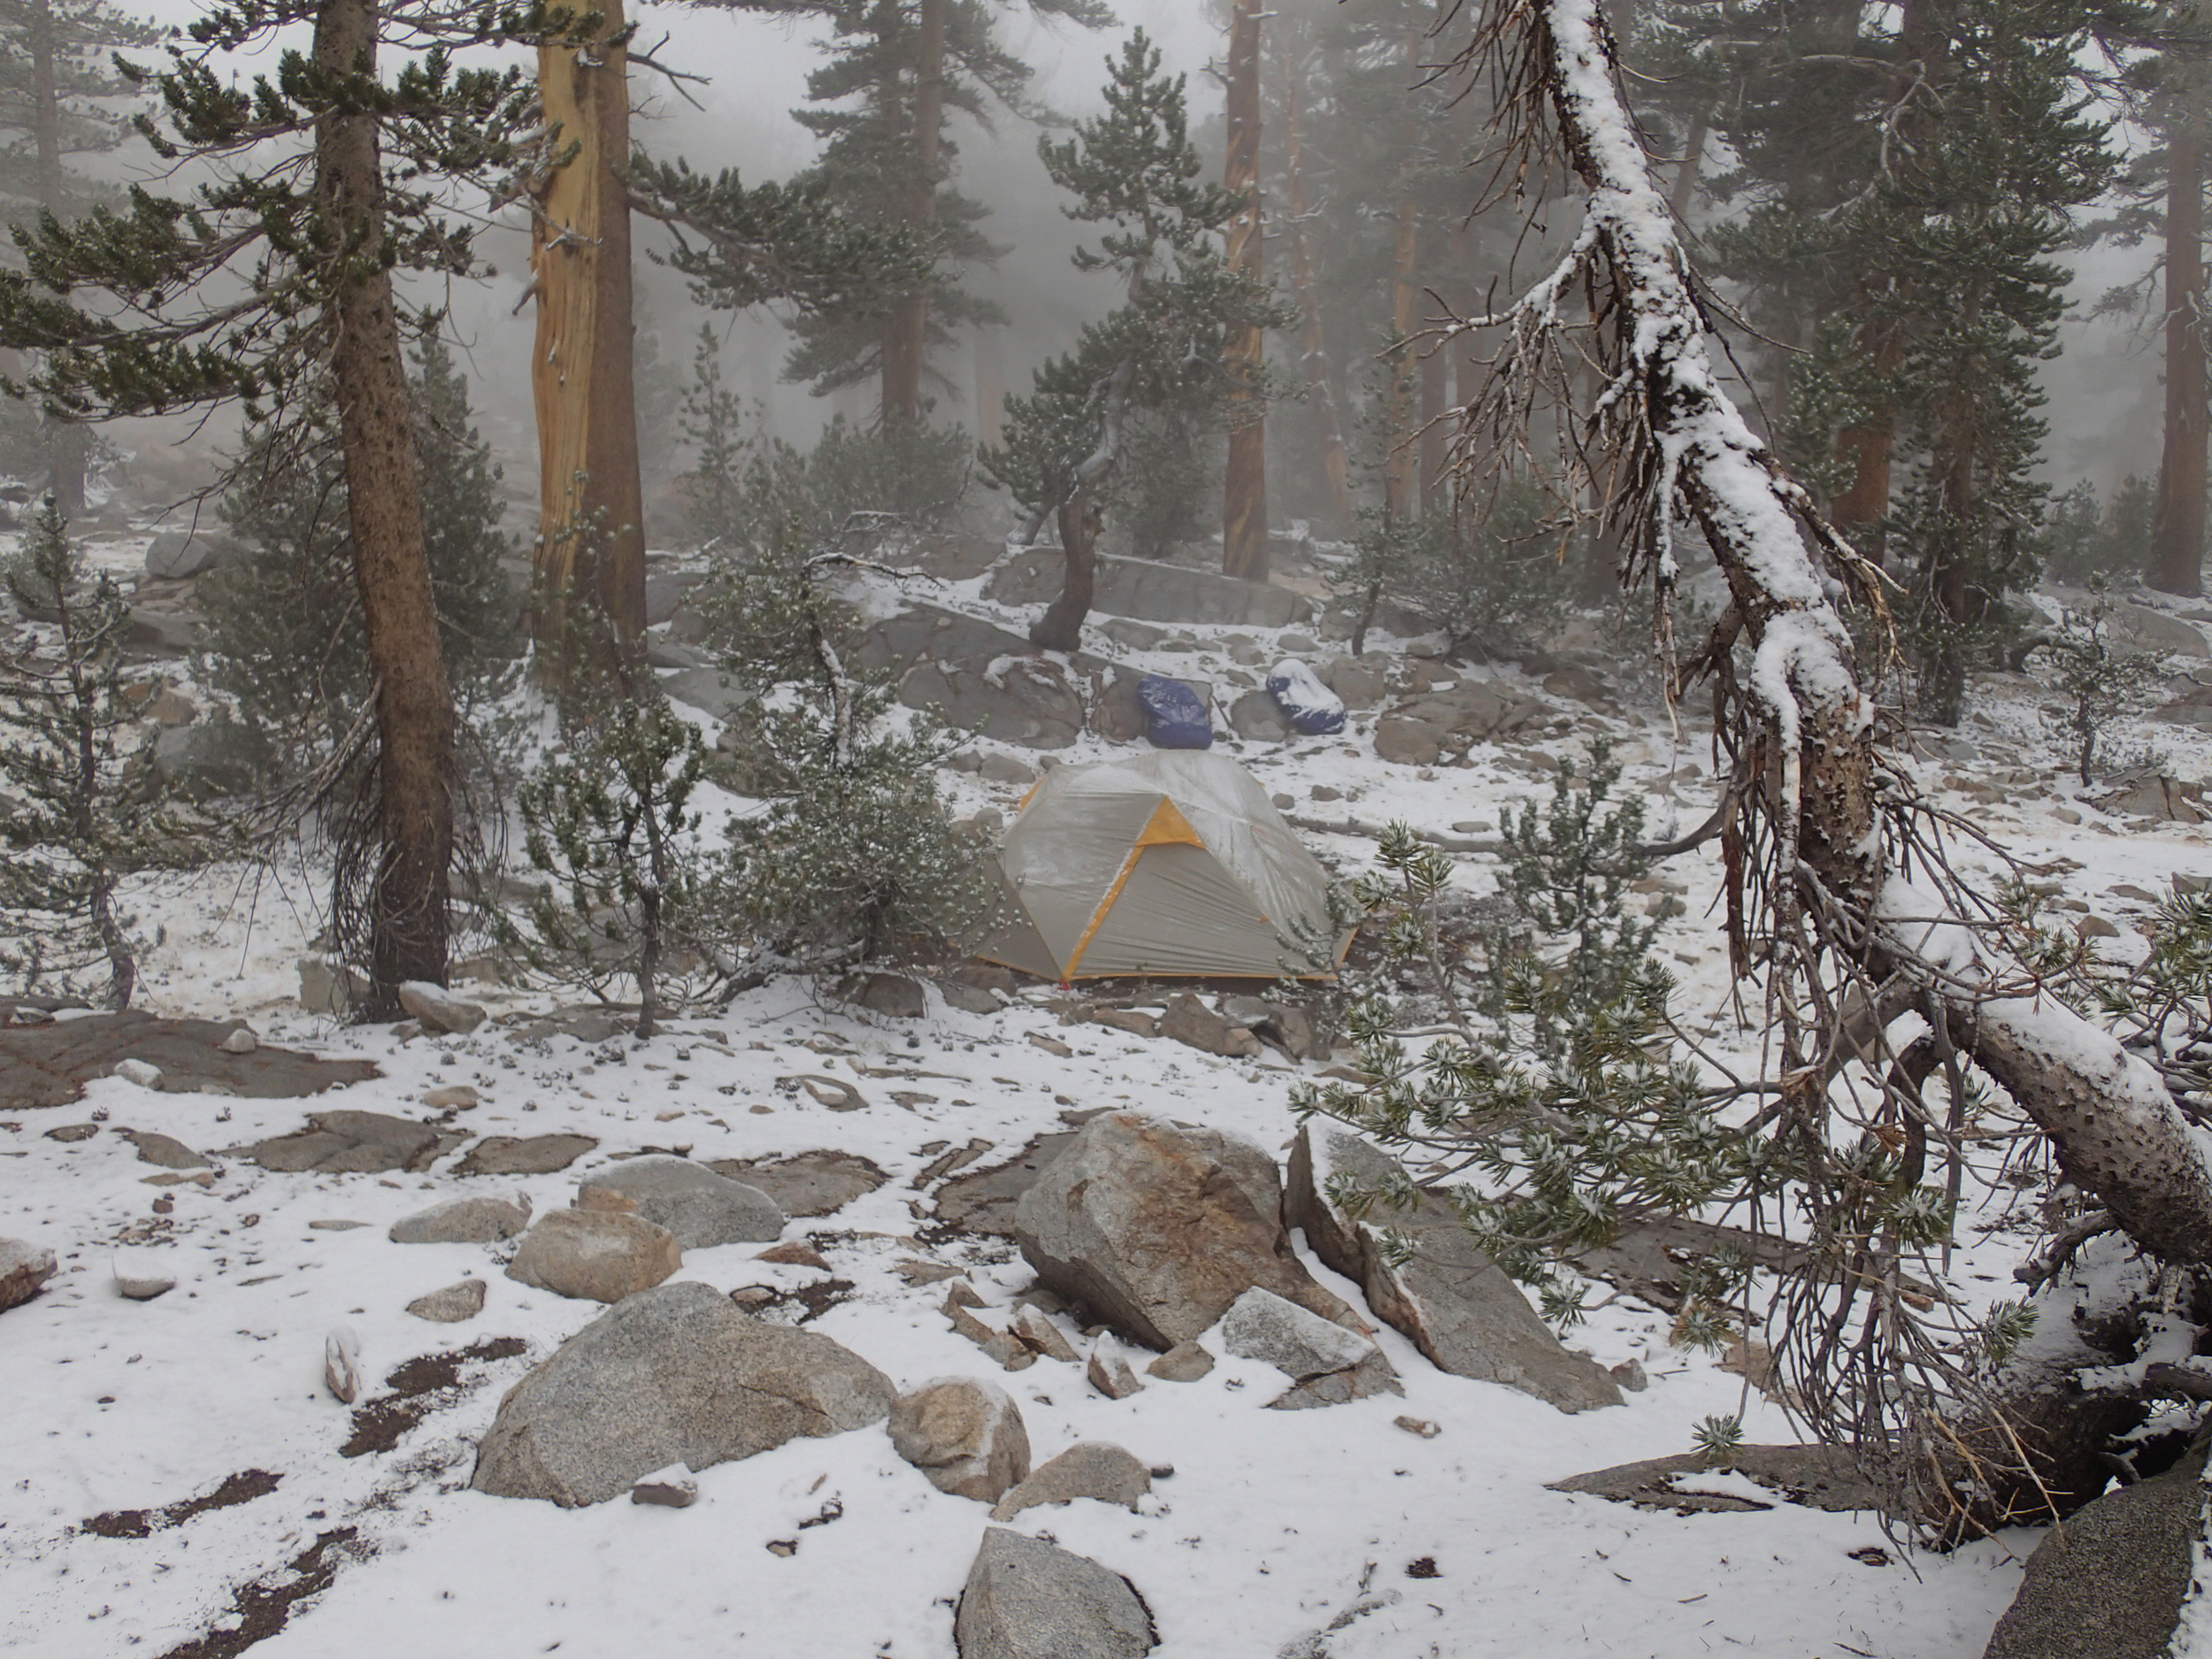 Snowy tent near Bench Lake